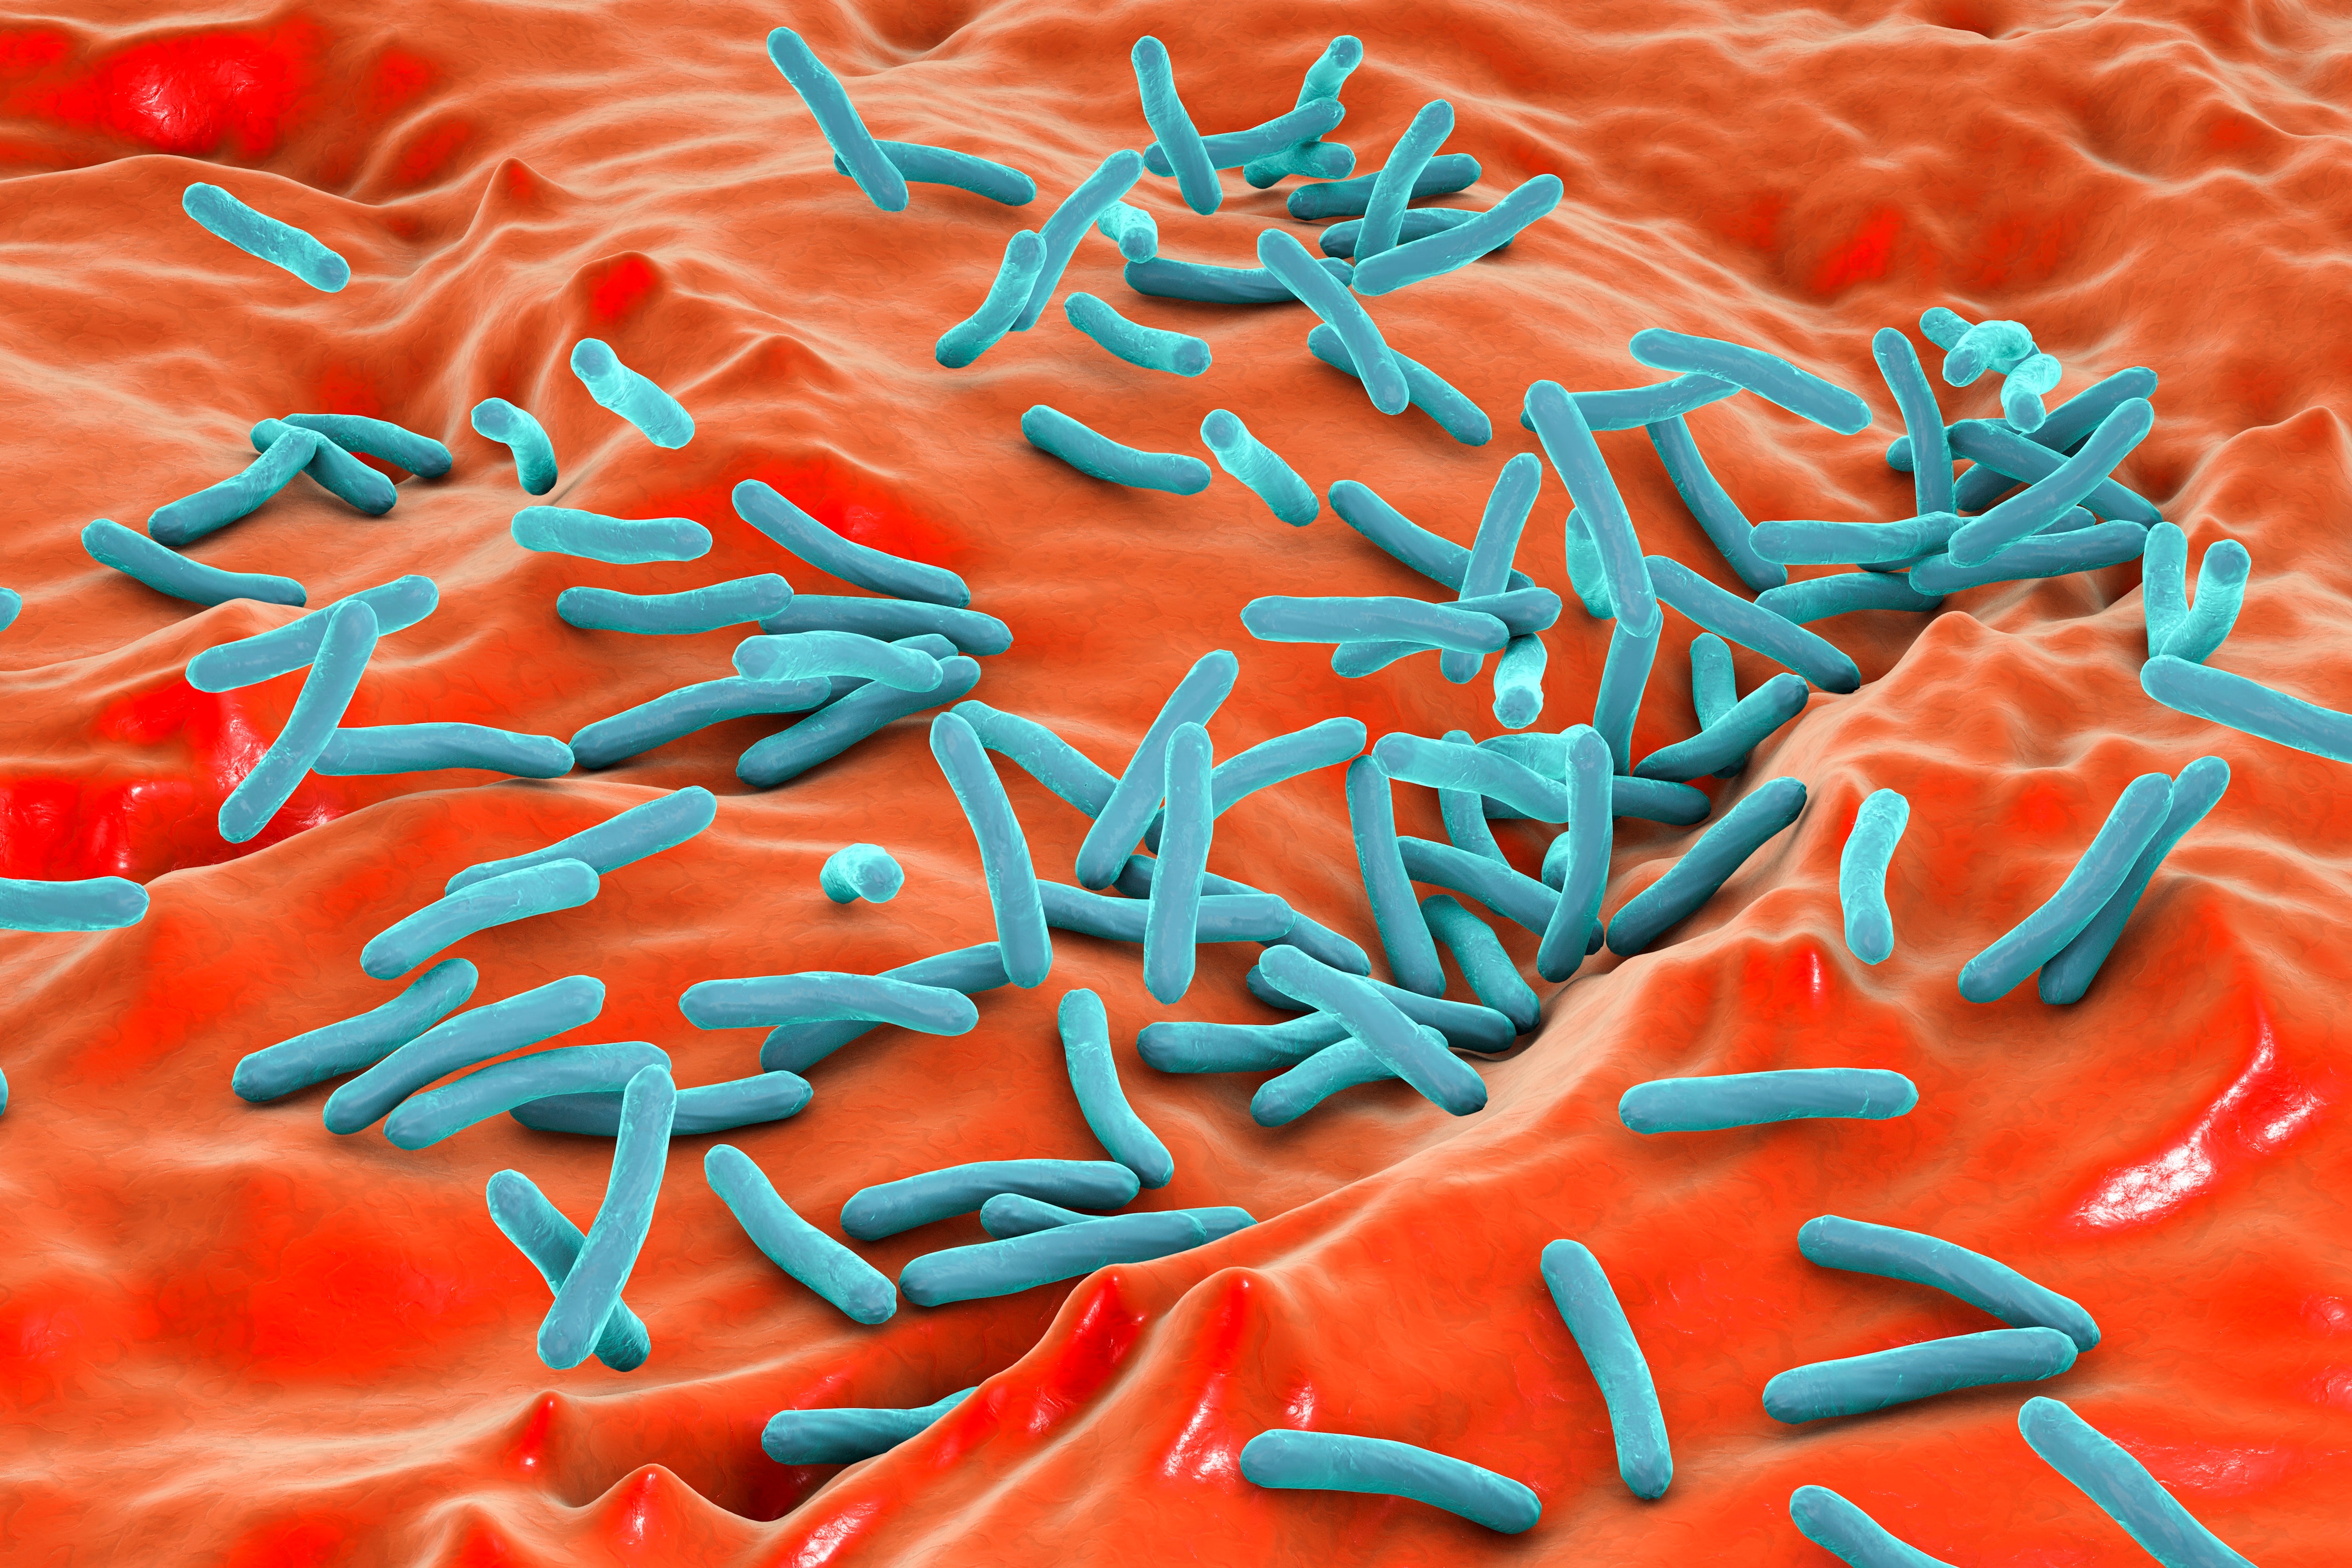 Antimikrobiyal Direnç COVID Nedeniyle Artıyor